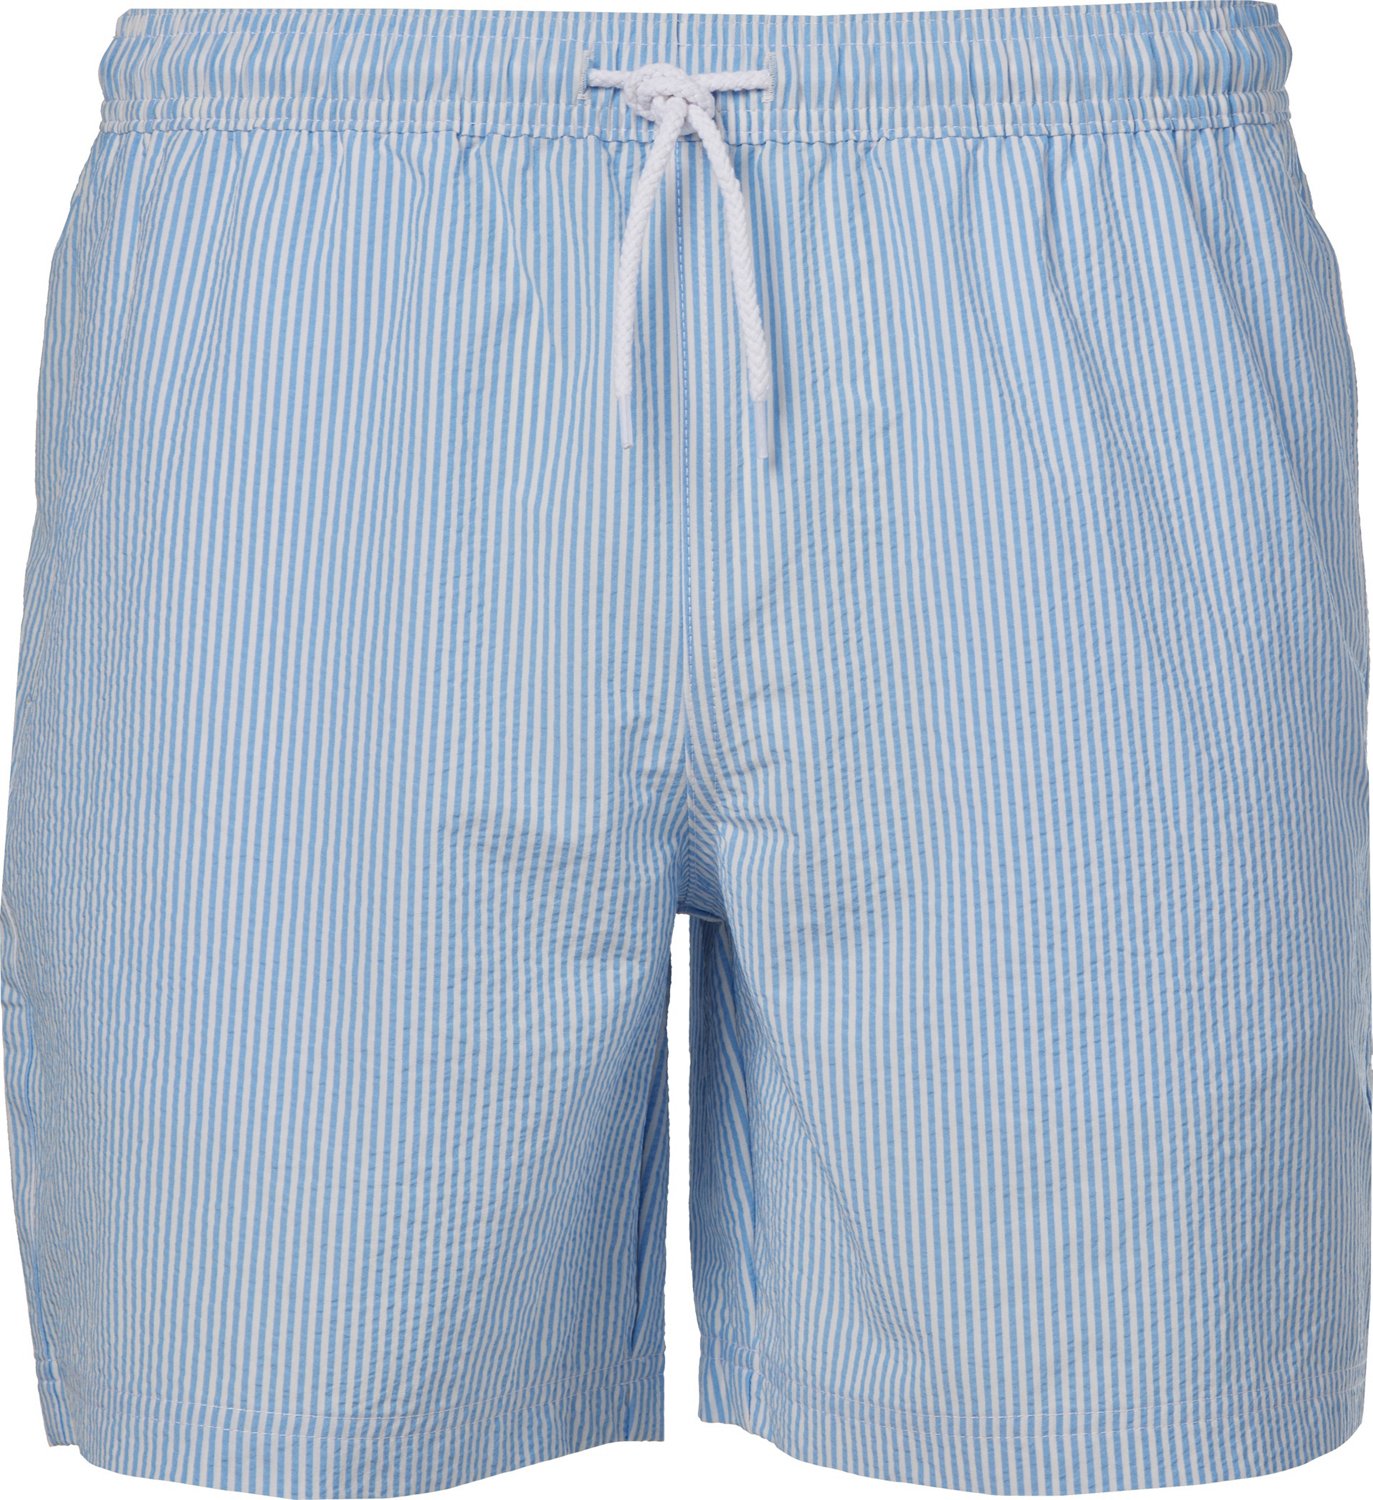 Men's Royal Blue Fisherman Cotton Wrap Shorts